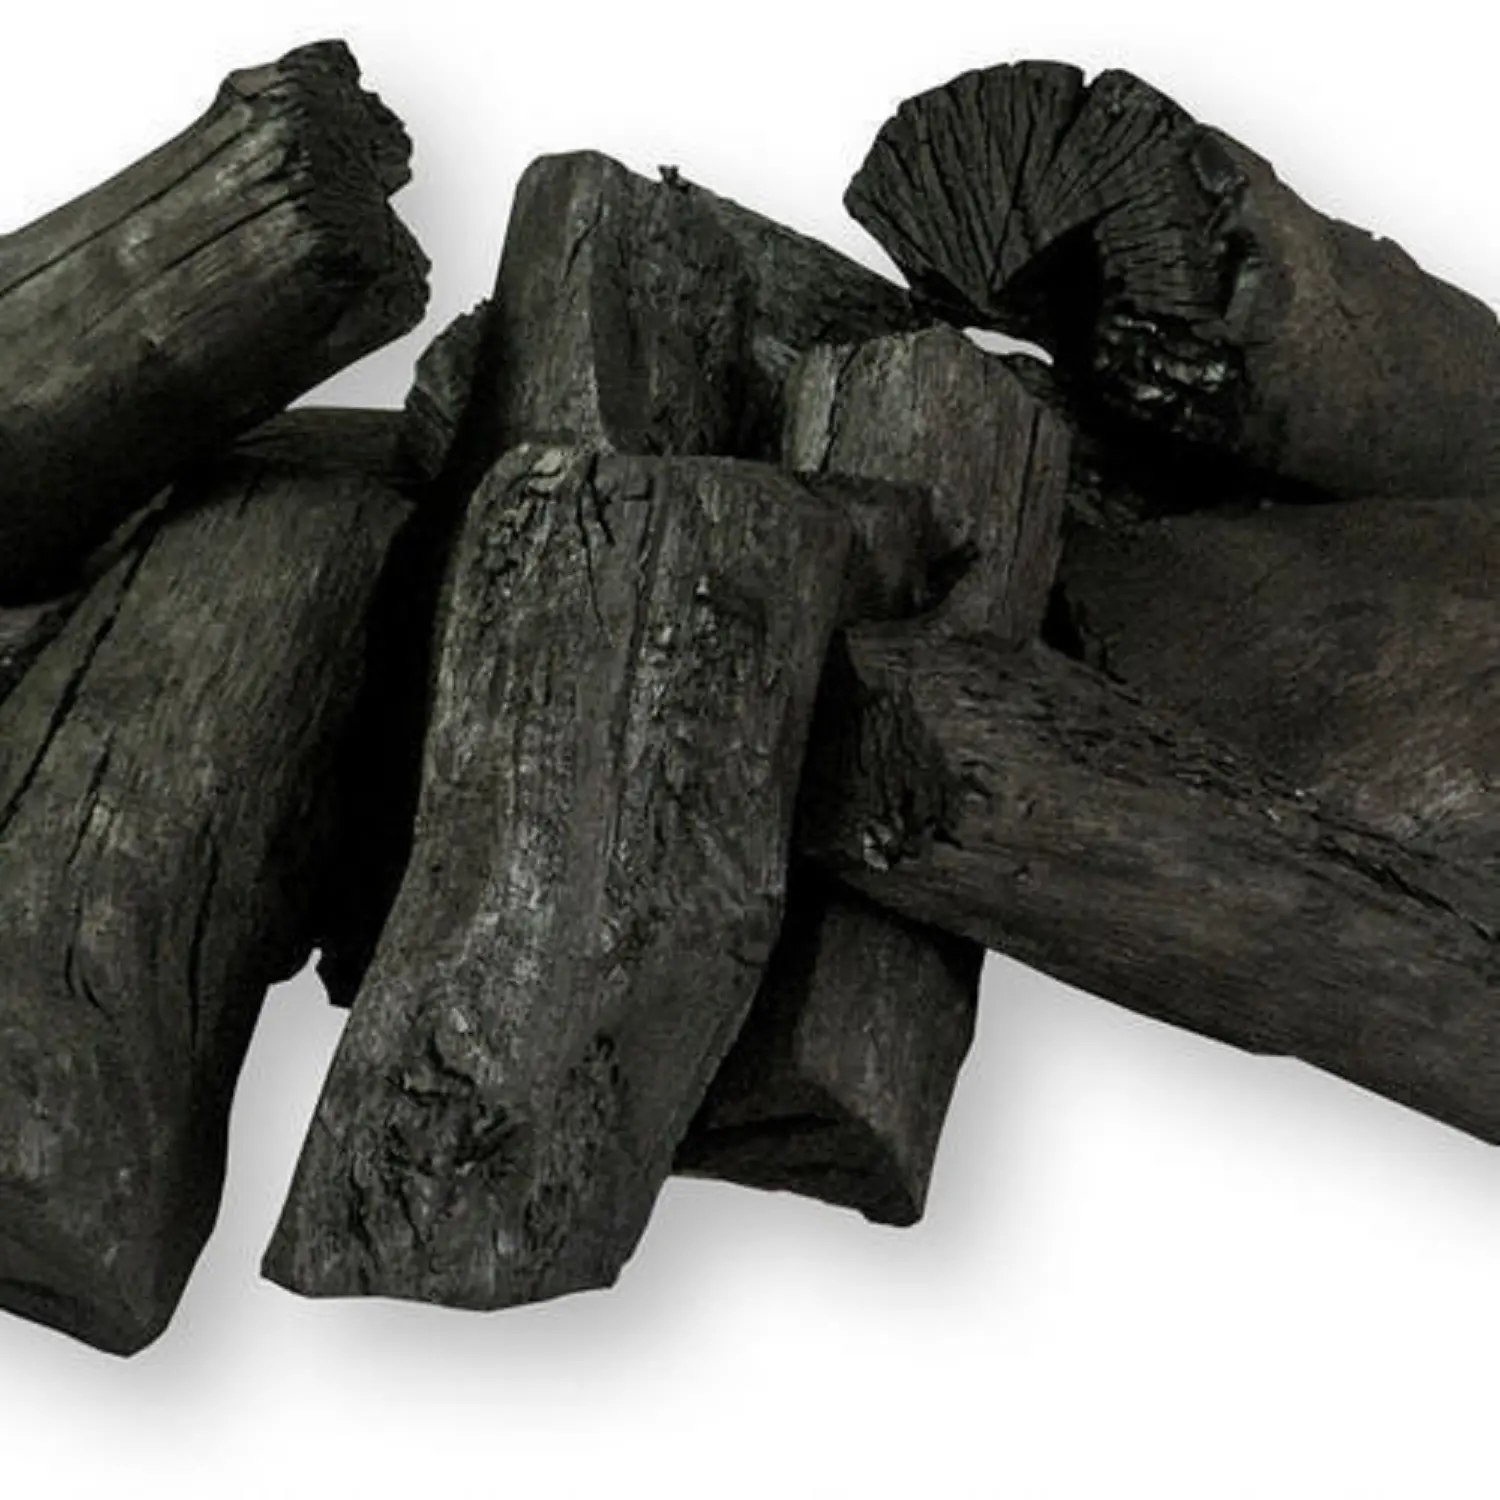 Yüksek kaliteli ücretsiz örnek odun kömürü barbekü kömür